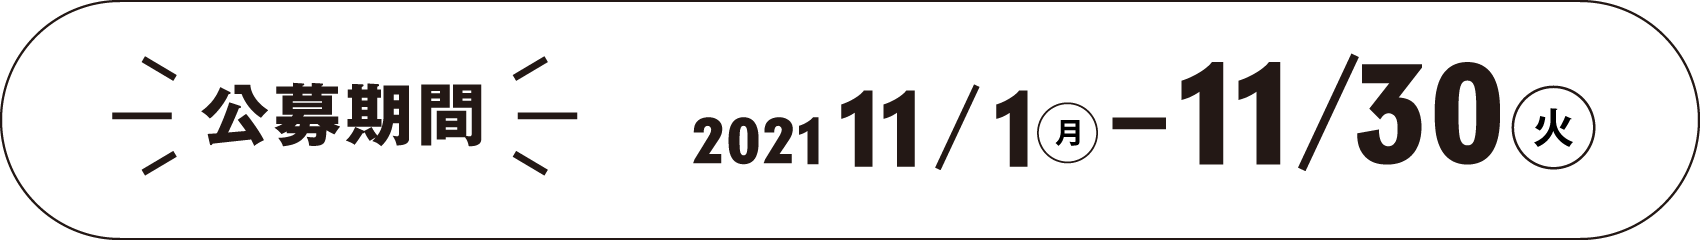 公募期間 2021.11.1(月)~11.30(火)